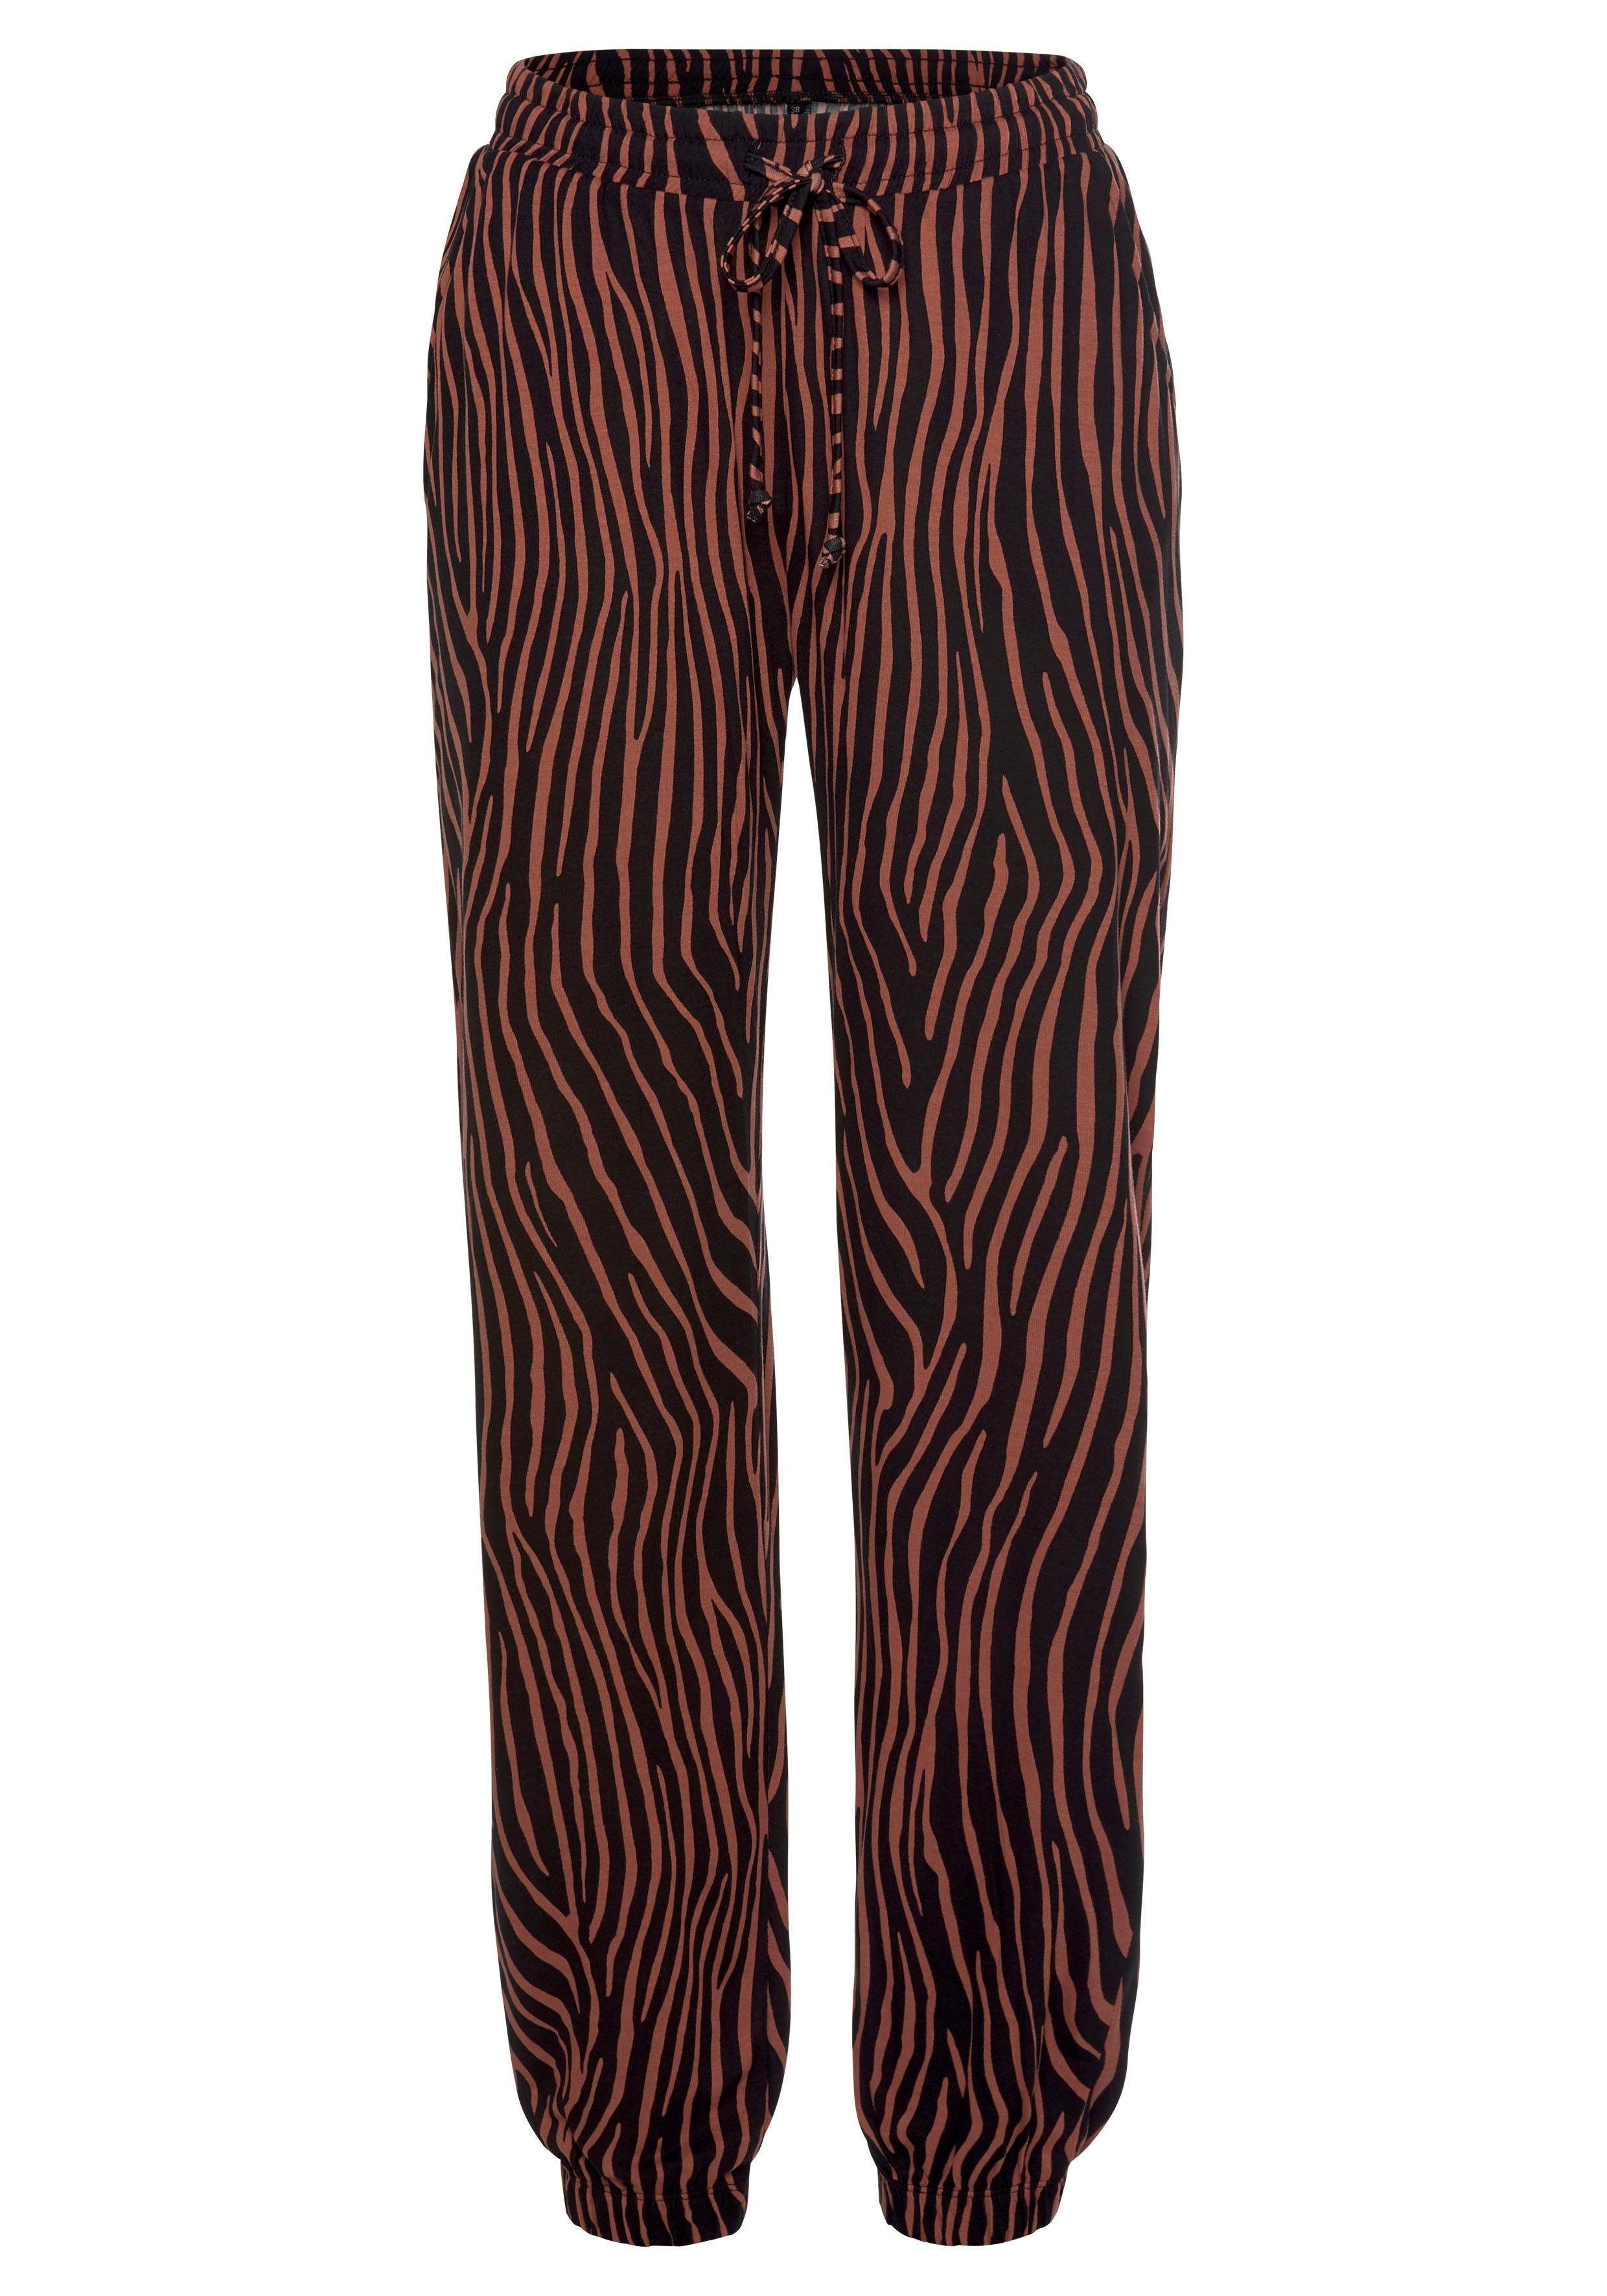 lascana strandbroek met zebraprint en zakken, jersey broek, loungebroek multicolor